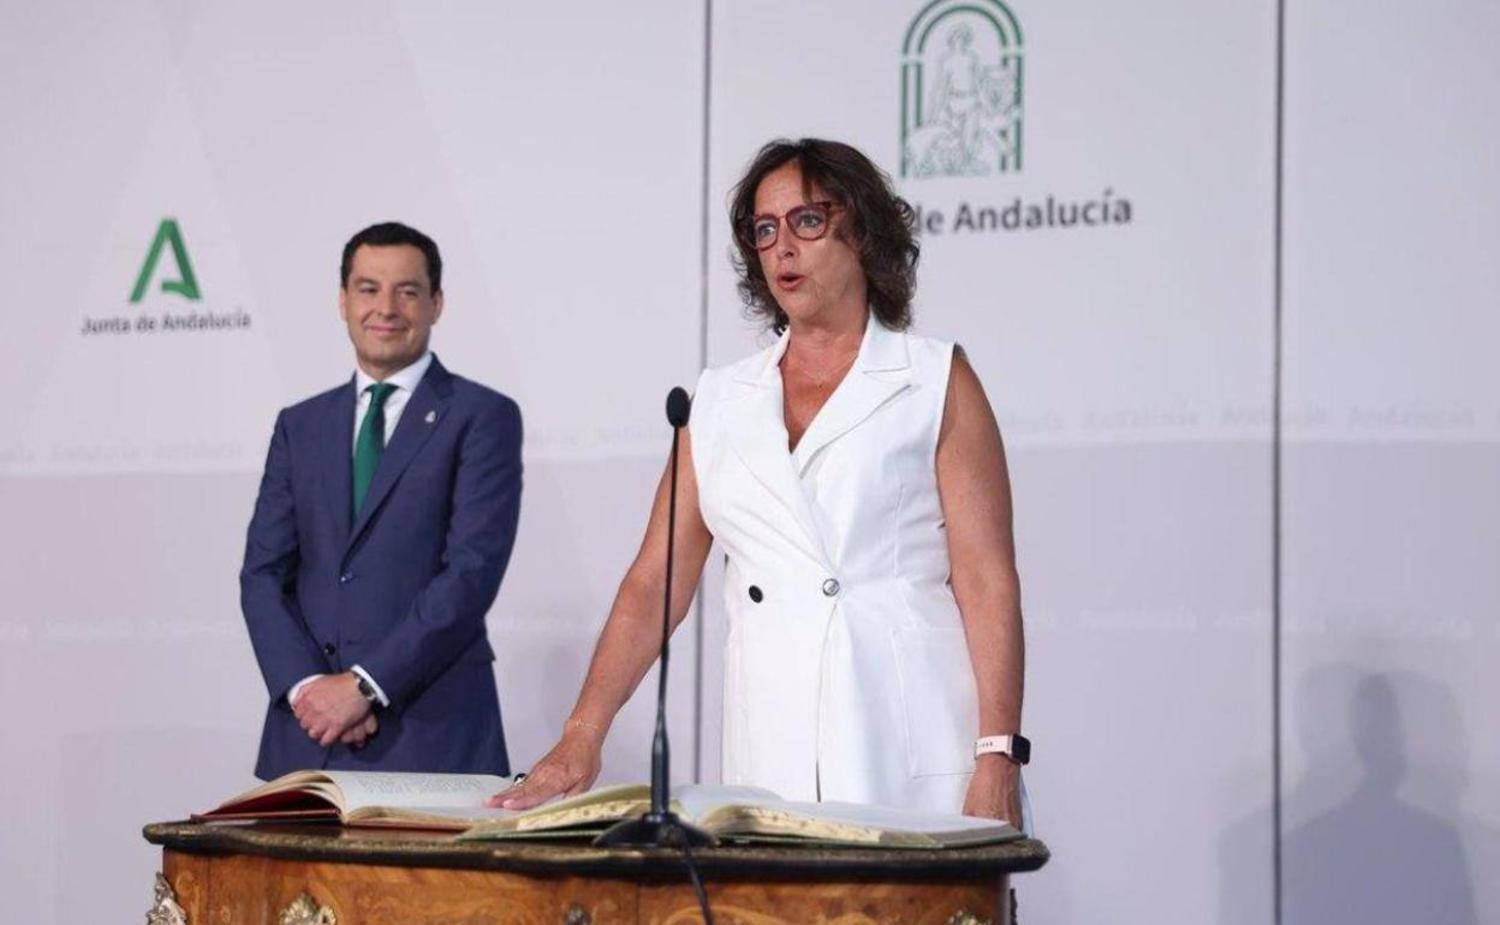 La Junta de Andalucía pide “ayuda” al sector privado para solucionar el déficit en la sanidad que ha provocado